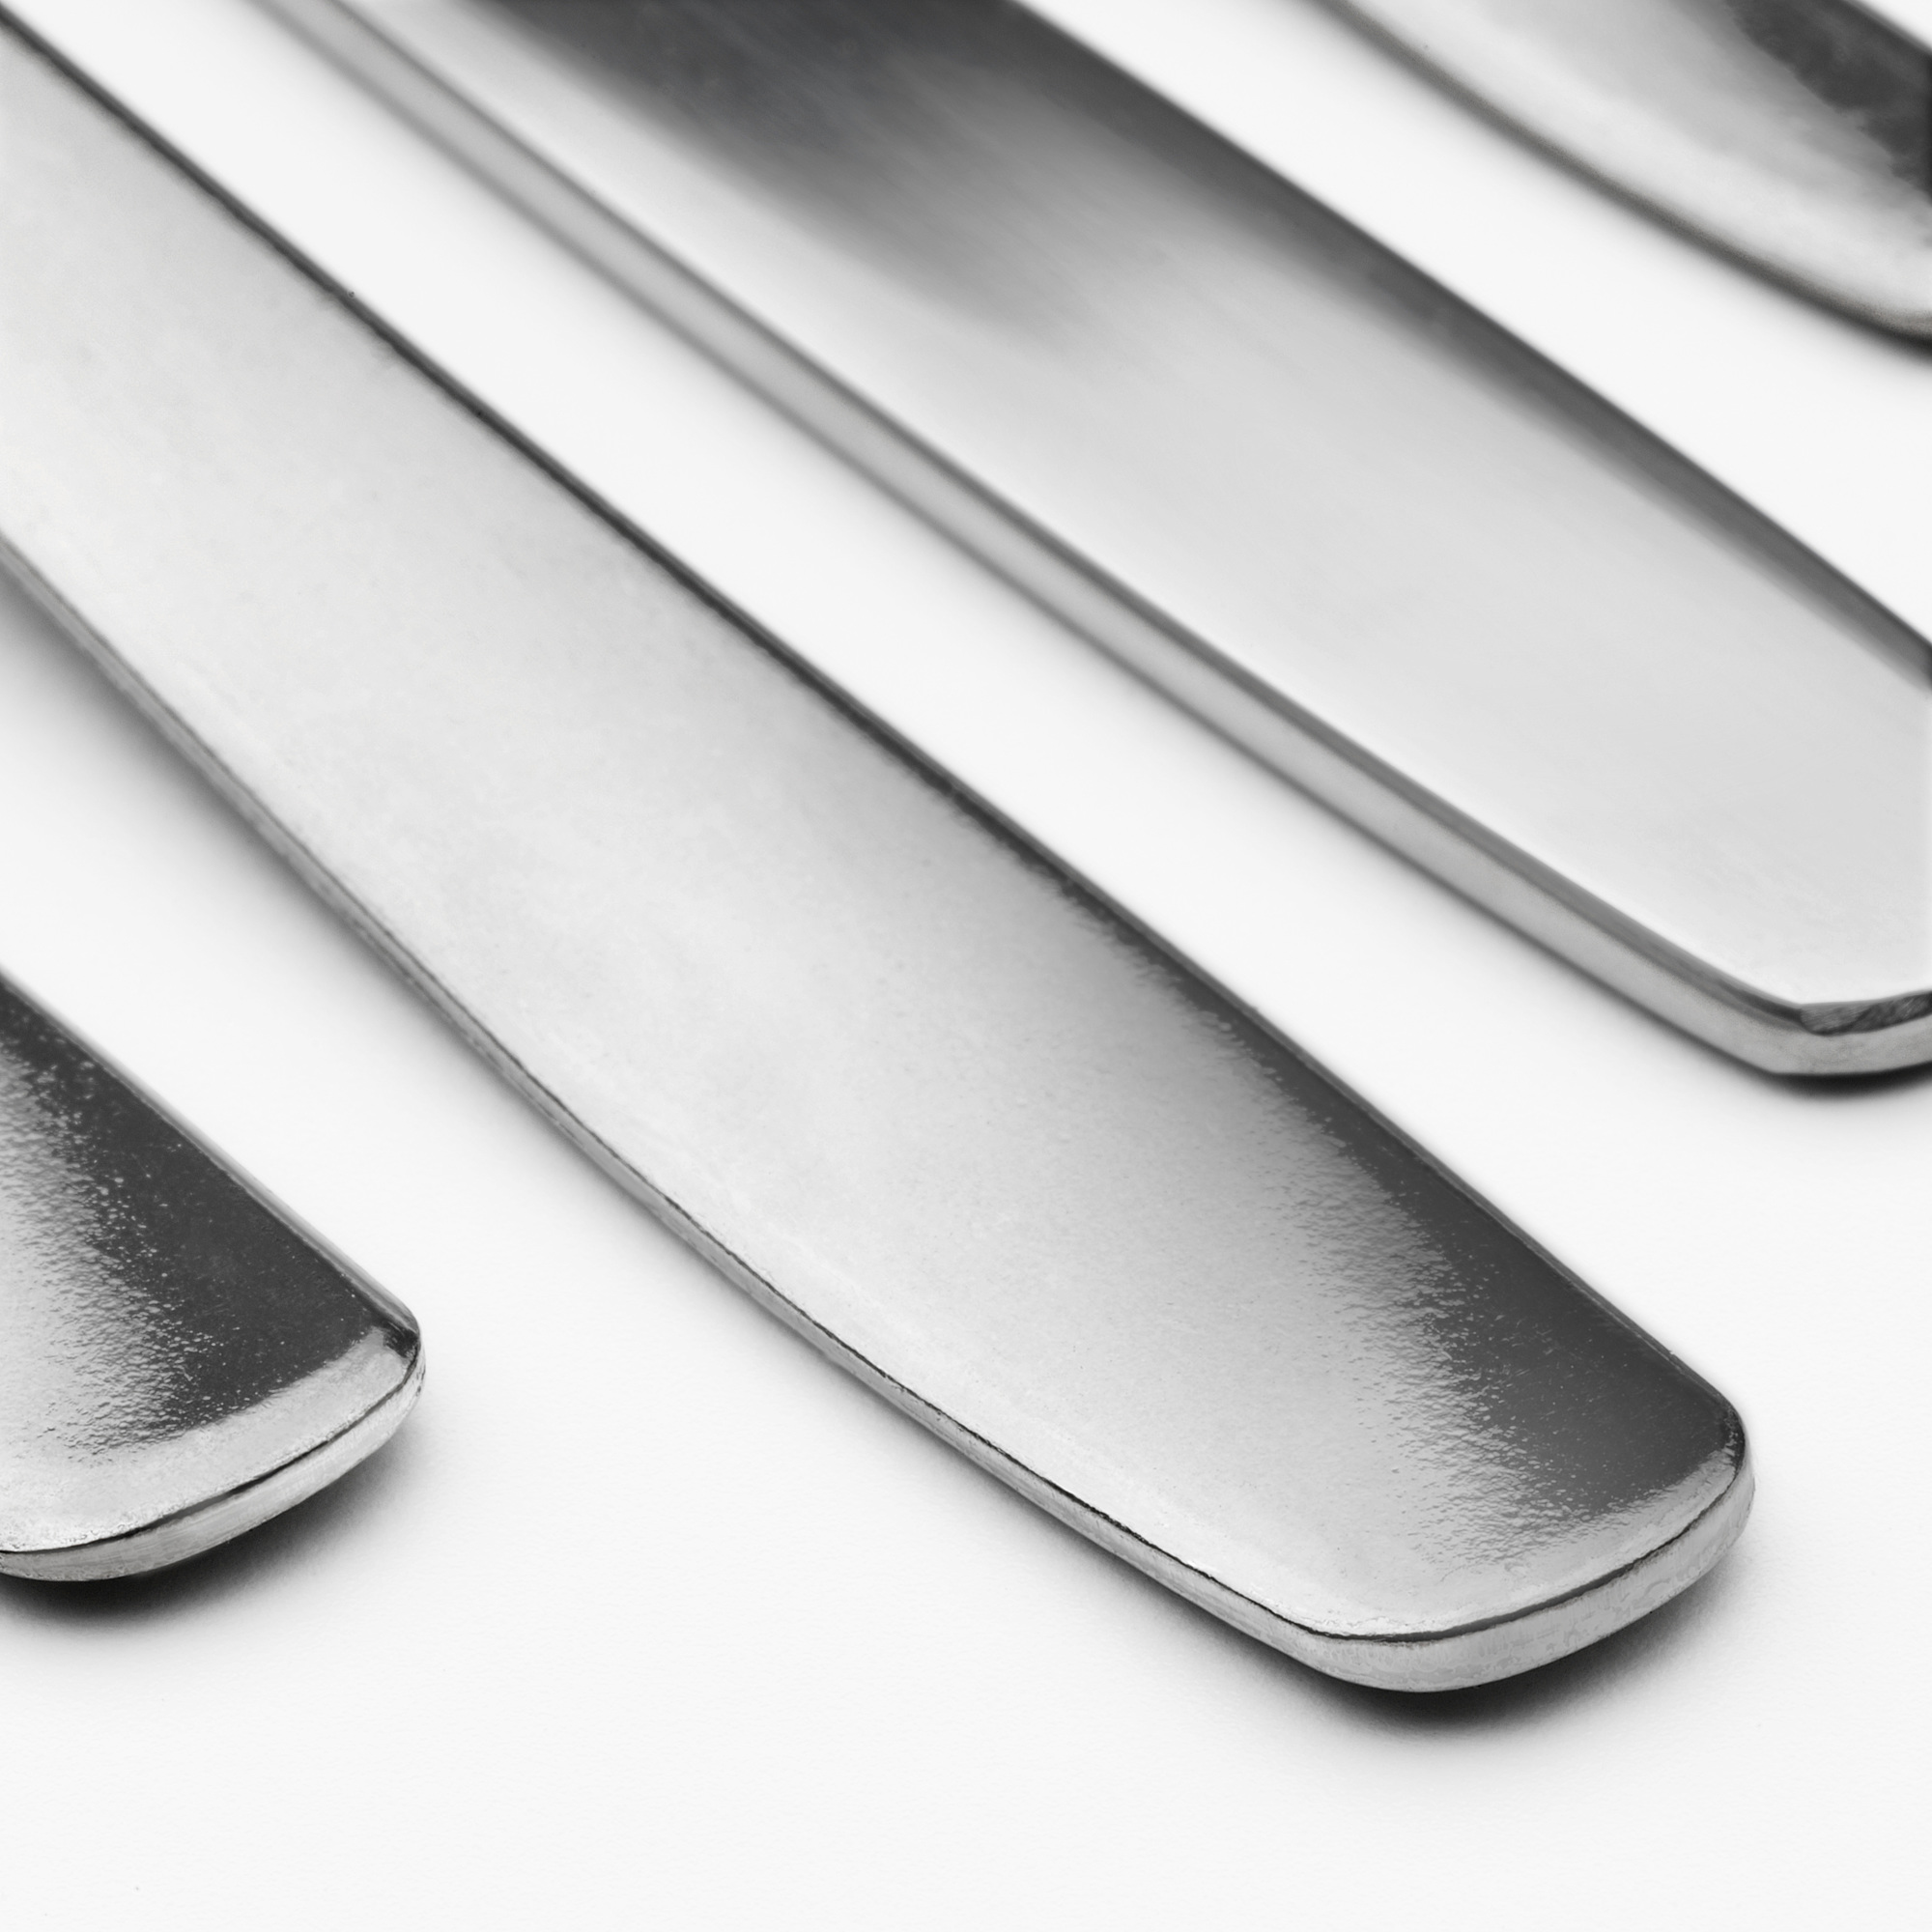 MOPSIG 16-piece cutlery set